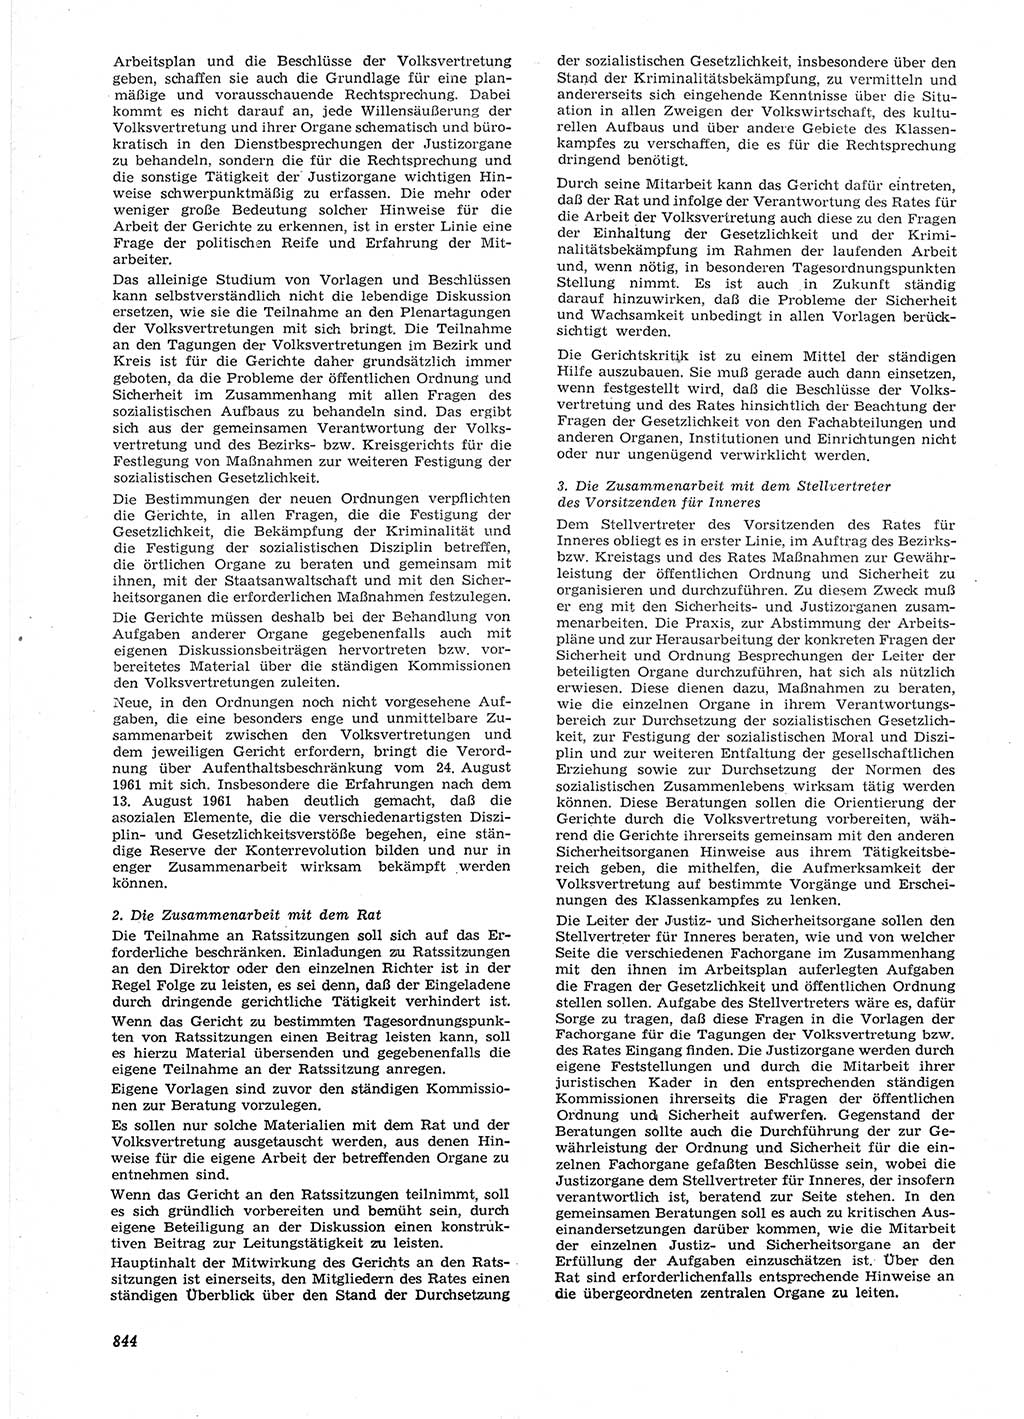 Neue Justiz (NJ), Zeitschrift für Recht und Rechtswissenschaft [Deutsche Demokratische Republik (DDR)], 15. Jahrgang 1961, Seite 844 (NJ DDR 1961, S. 844)